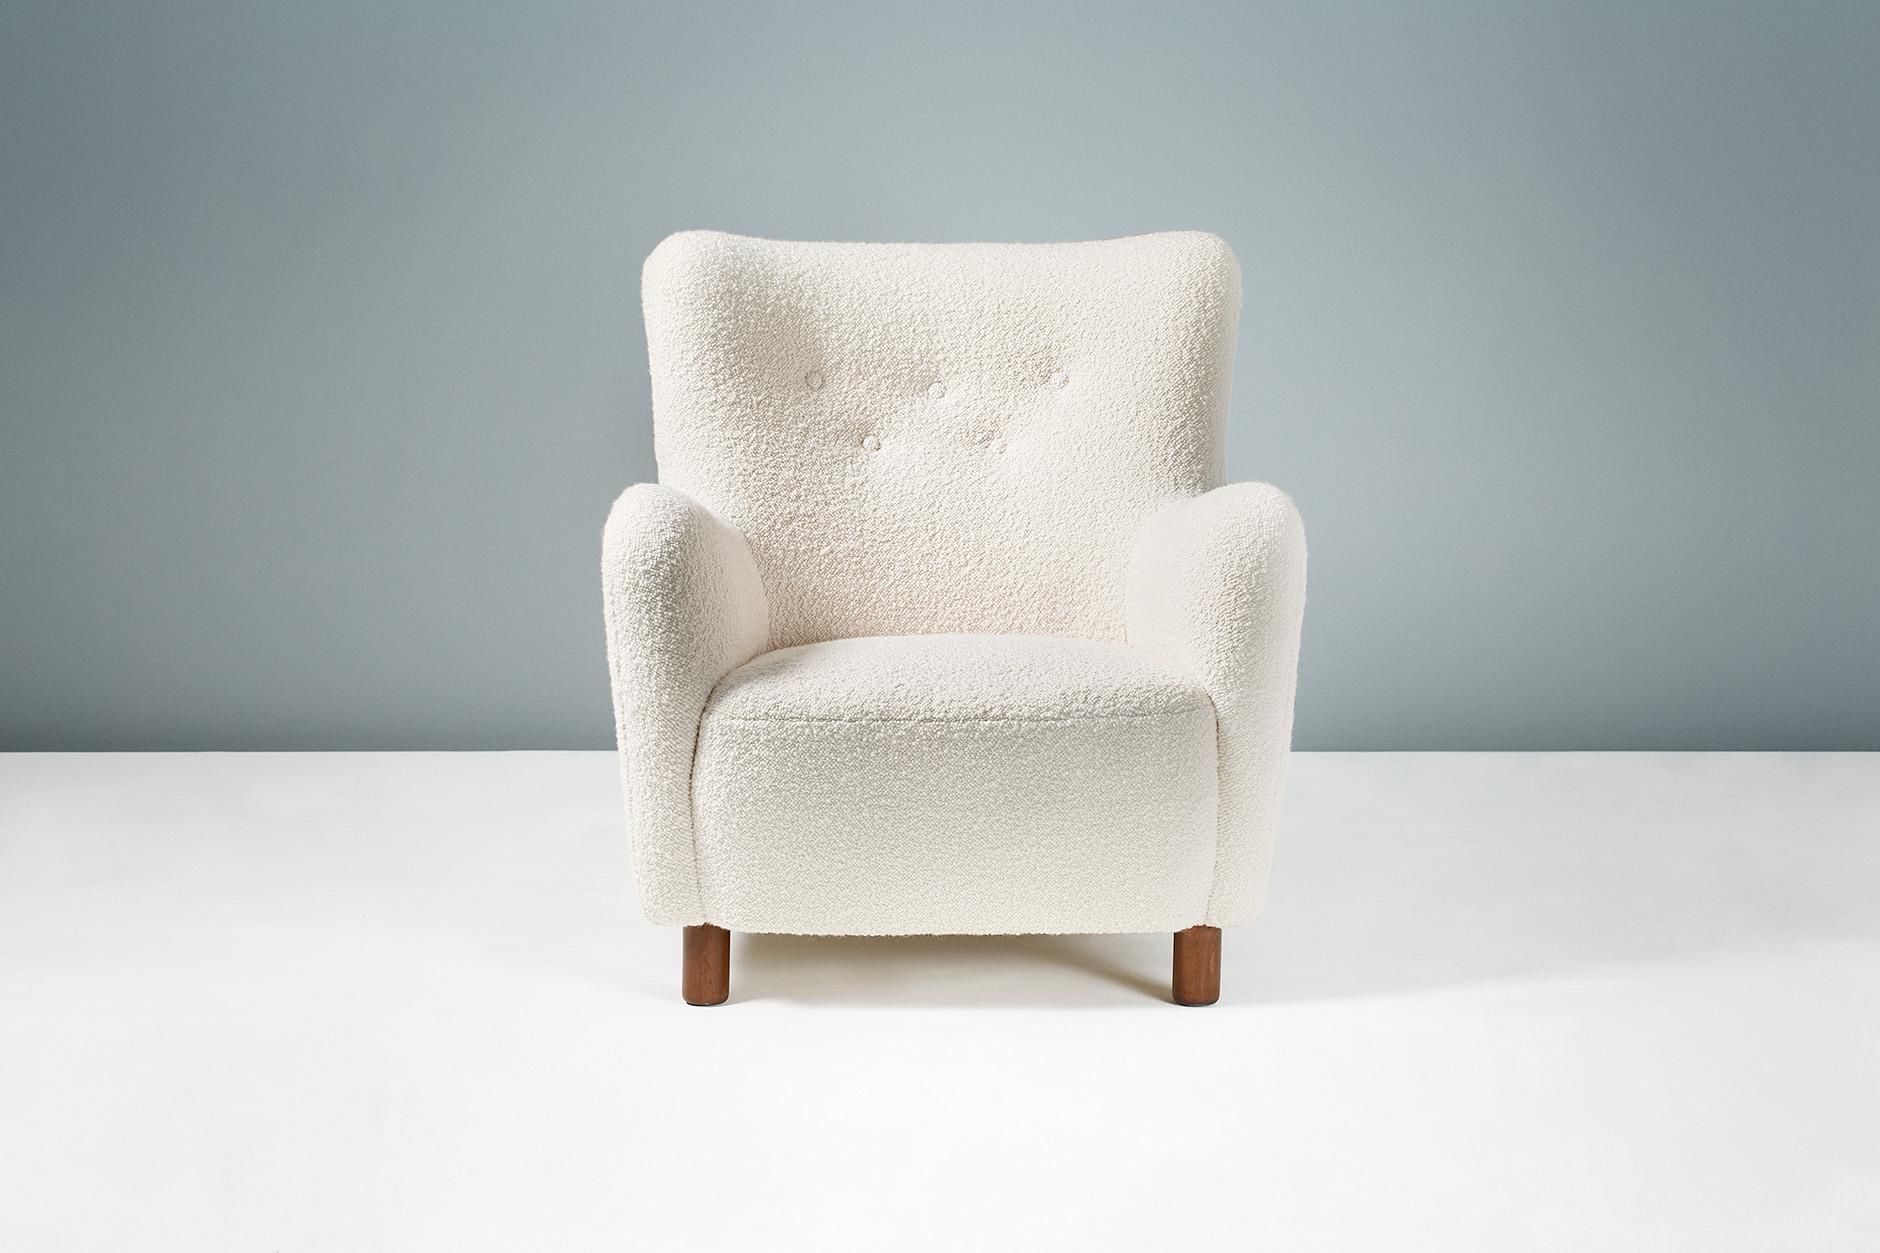 Dagmar Design

Chaise longue modèle 54

Une paire de chaises longues sur mesure, conçues et produites dans nos ateliers de Londres, avec des matériaux de la plus haute qualité. Ces modèles sont recouverts d'un luxueux tissu bouclé blanc cassé en